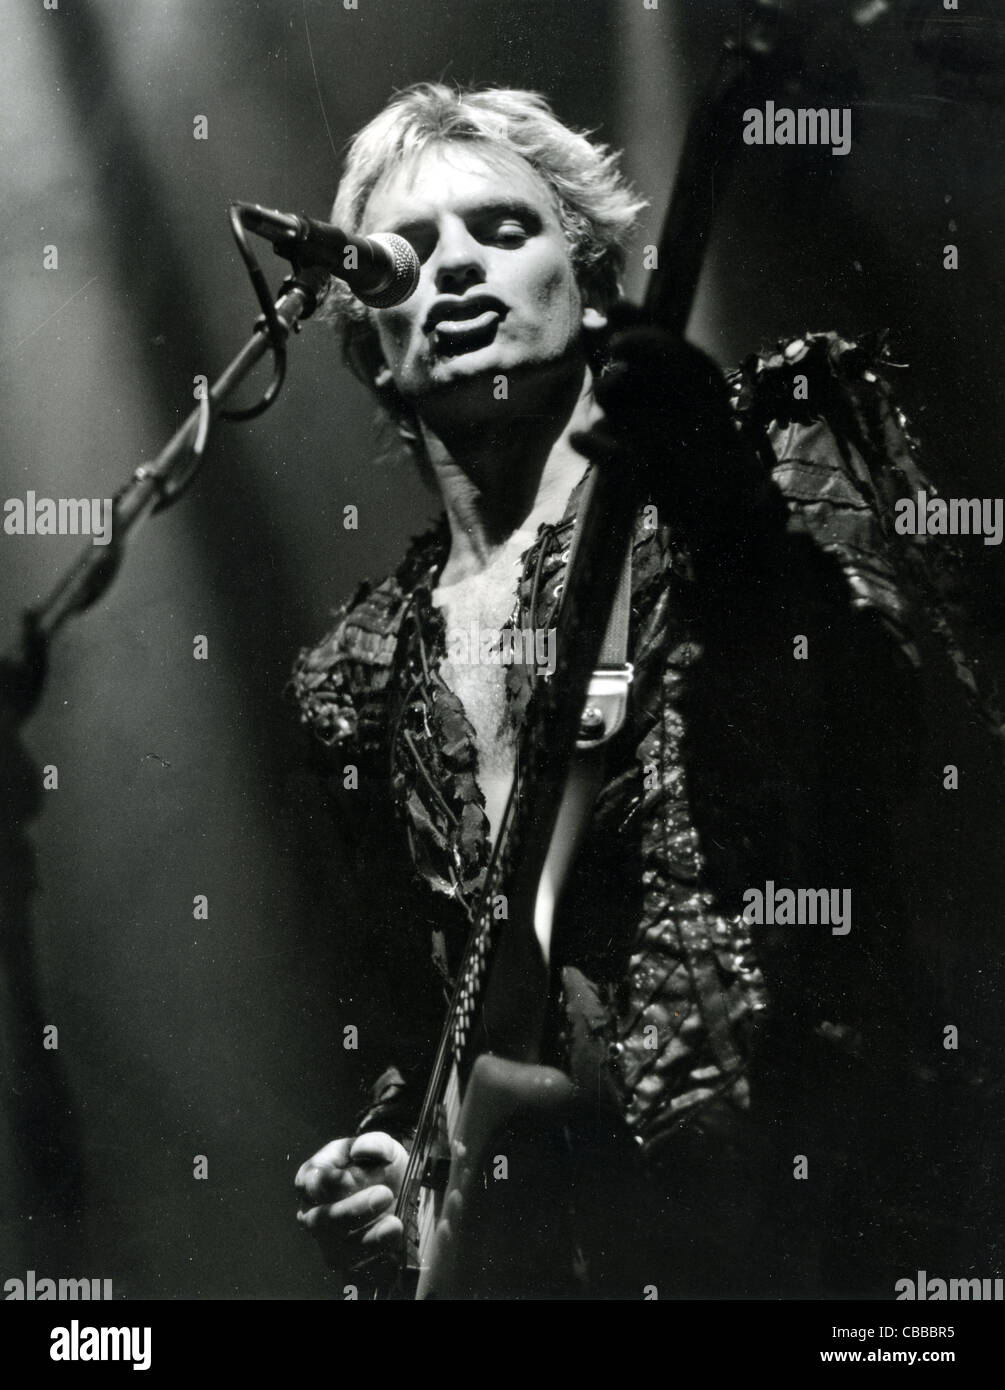 DIE Polizei UK-Rock-Gruppe mit Sting im Dezember 1983. Foto D Hartas Stockfoto